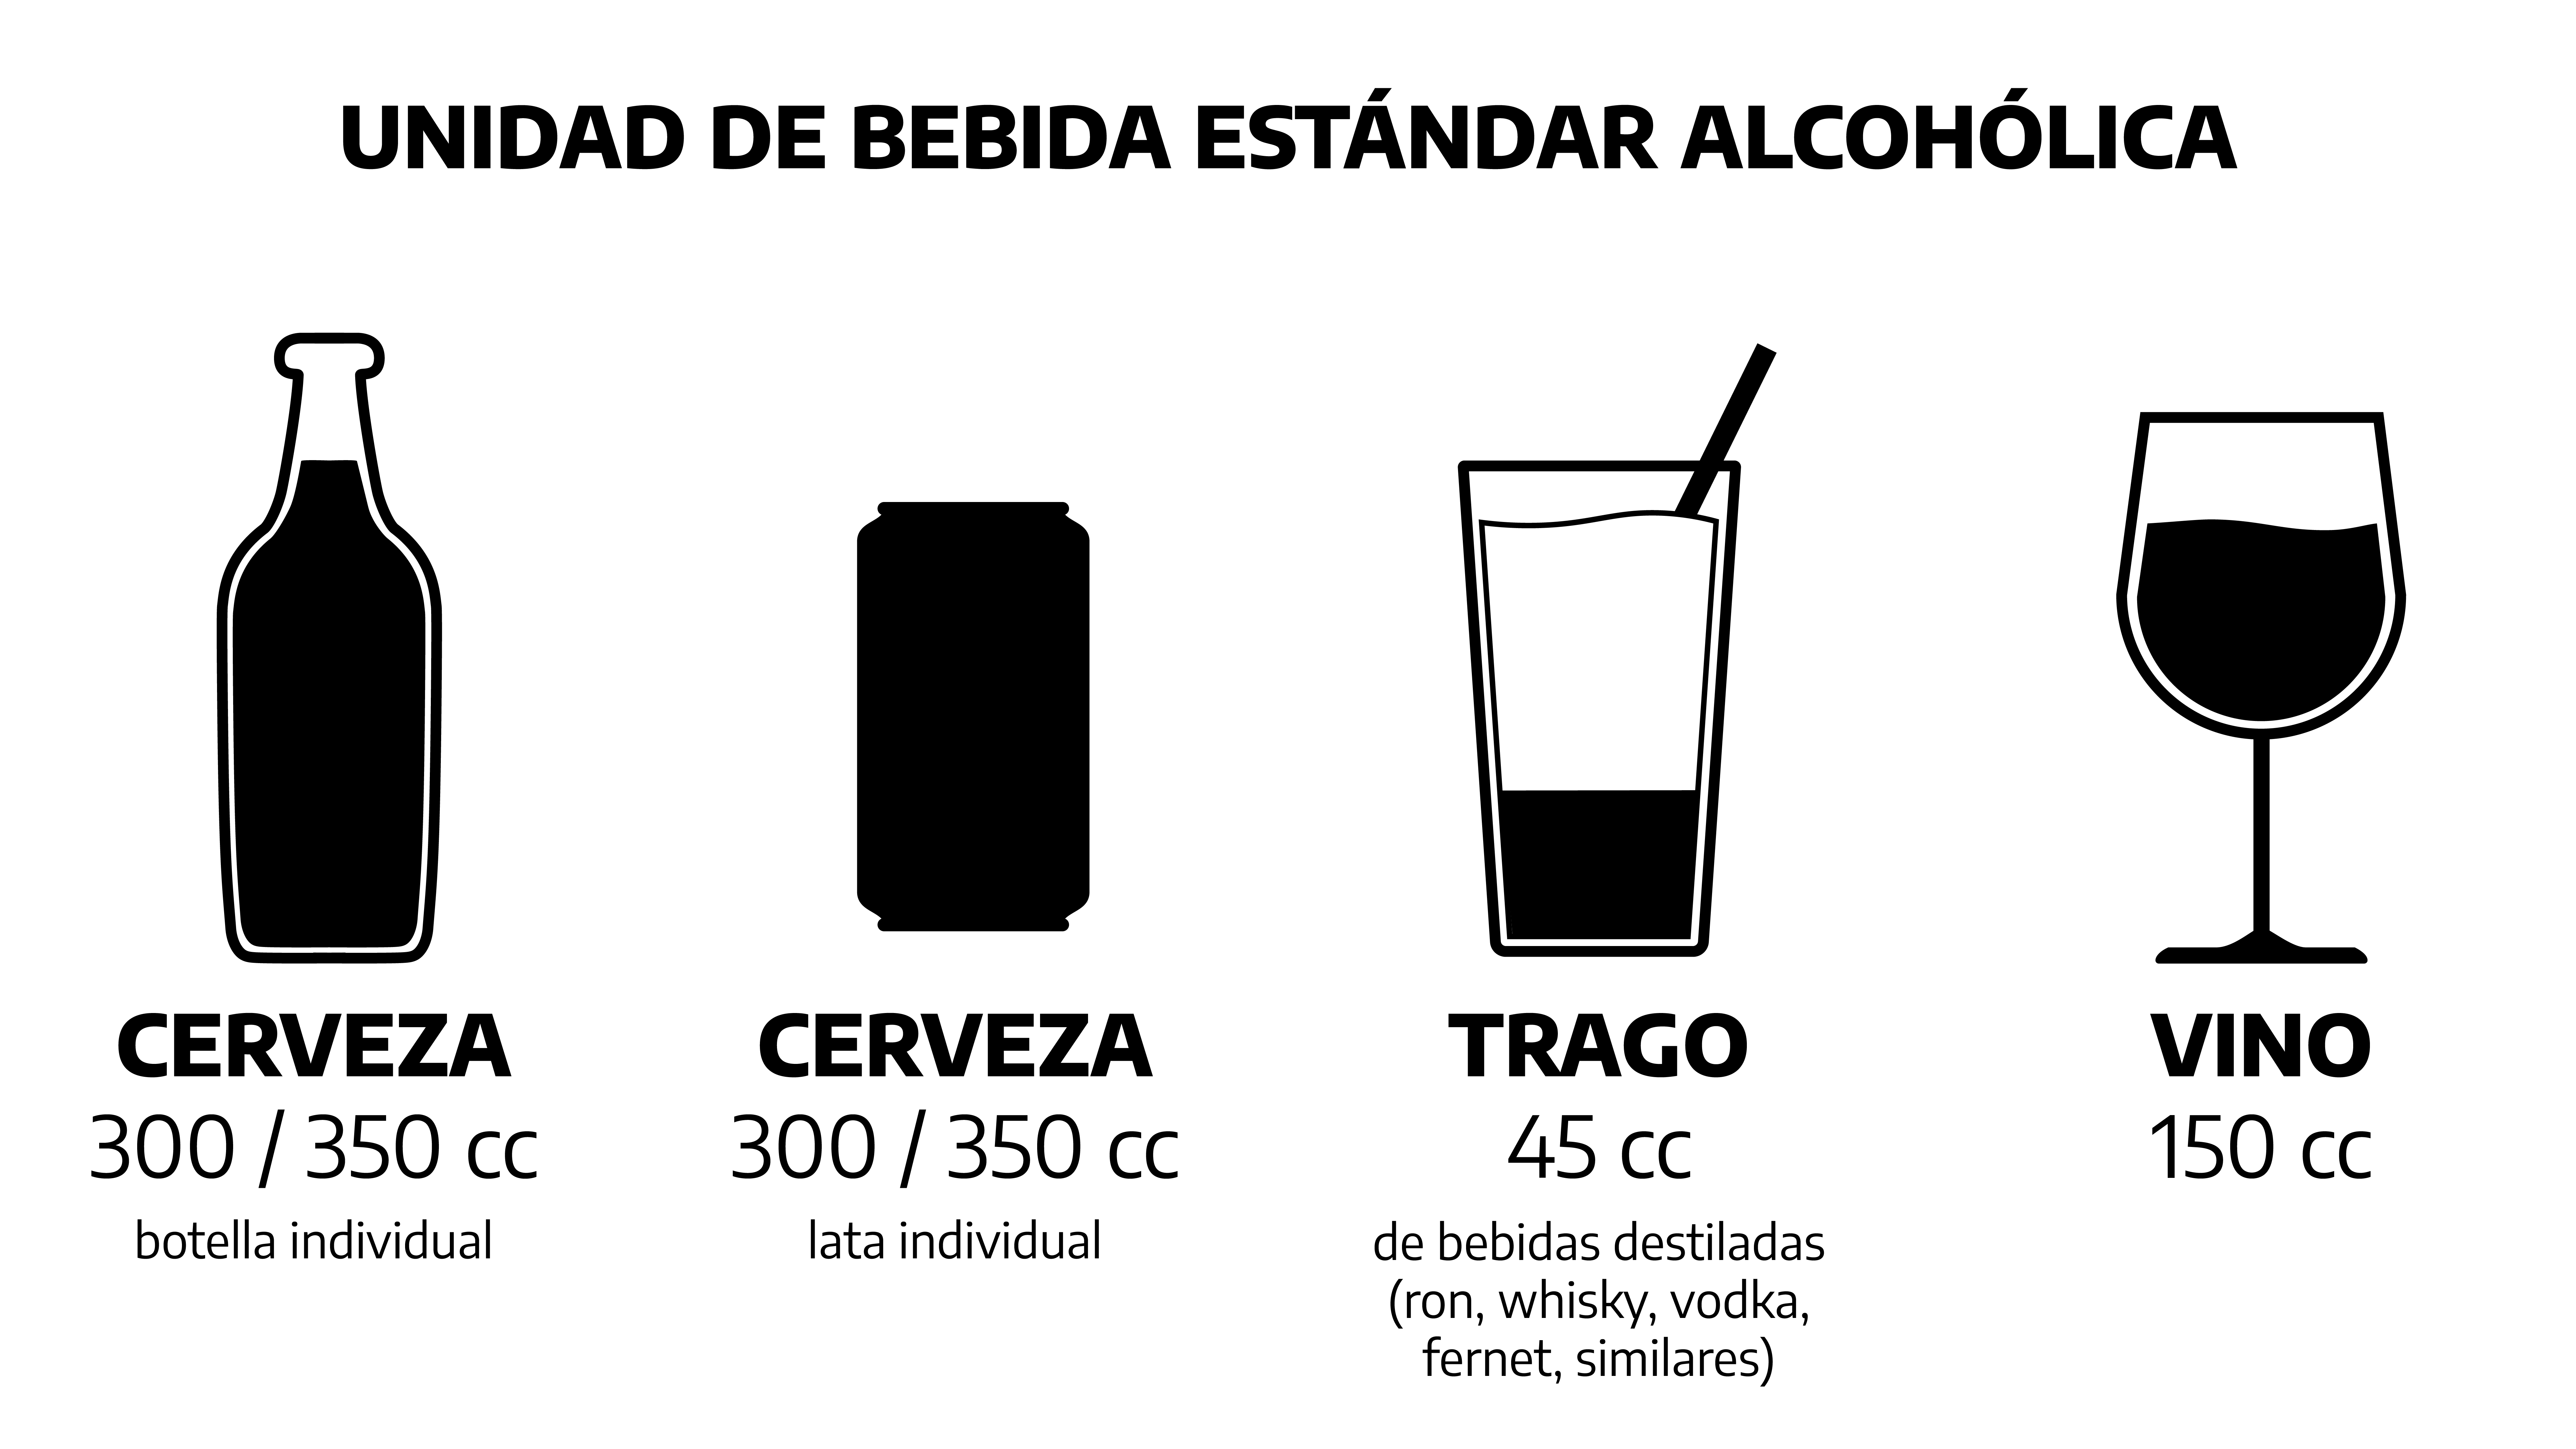 Unidad estándar de bebida alcohólica